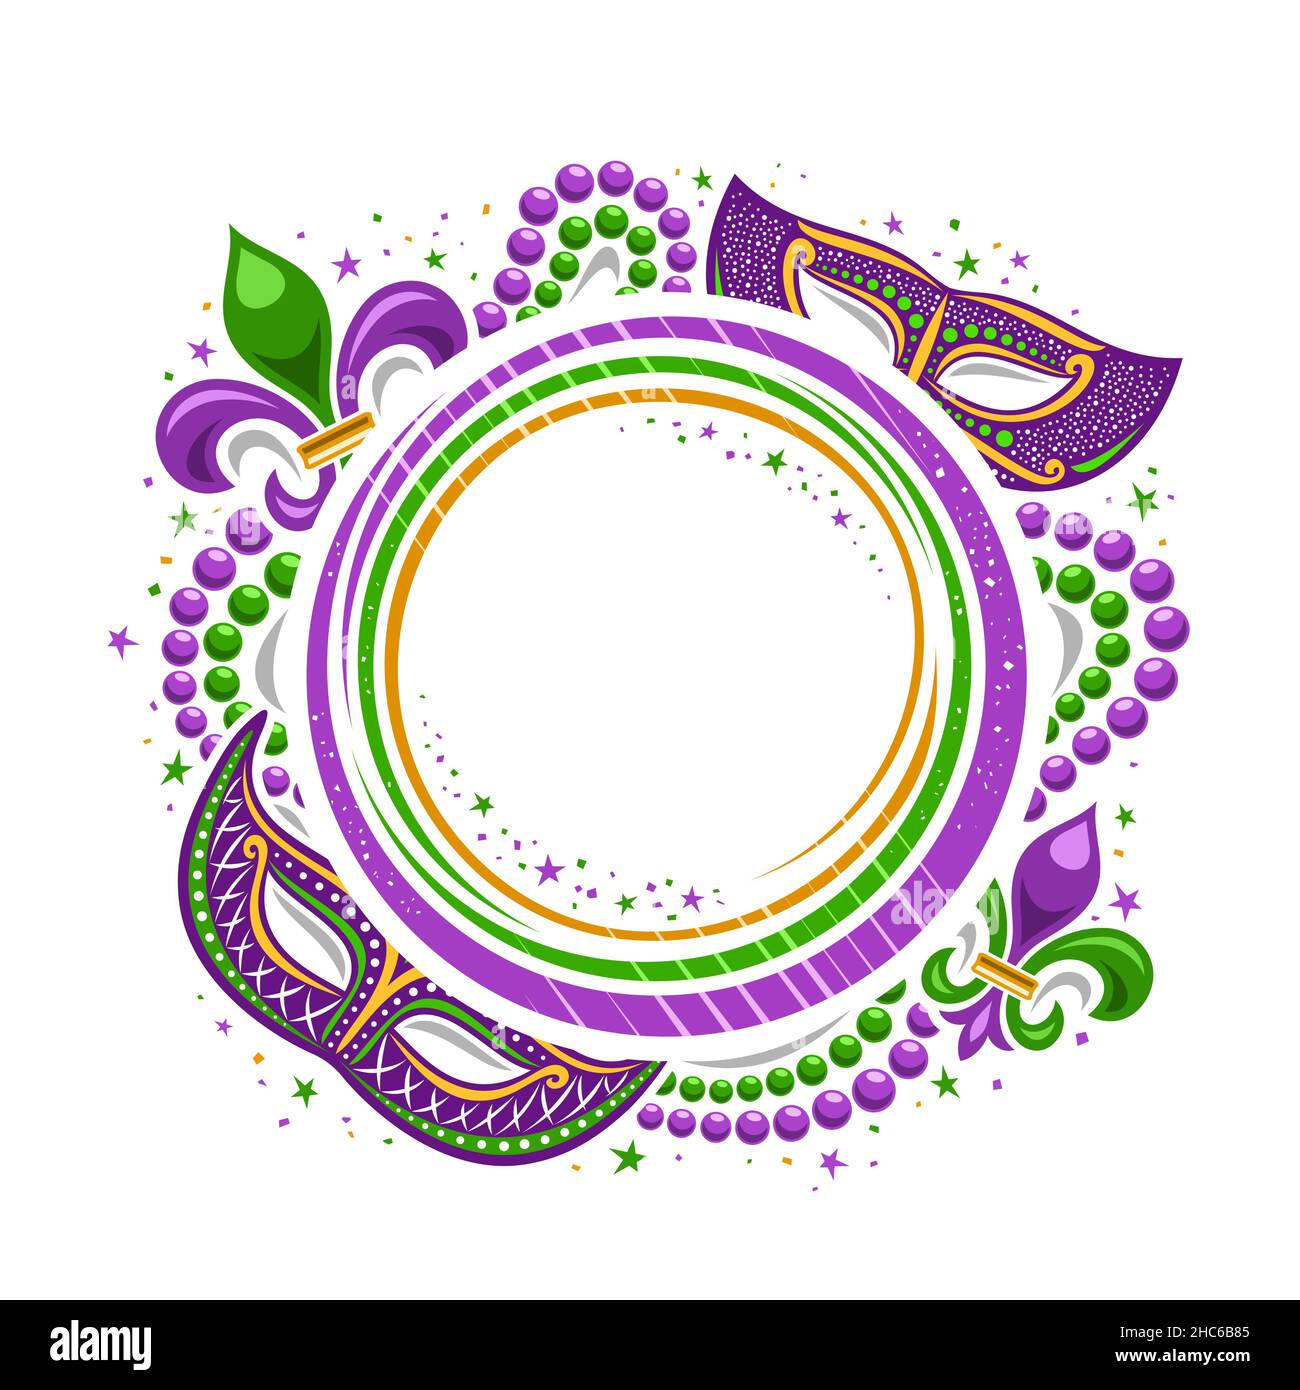 Cadre vectoriel Mardi gras avec espace pour le texte, modèle rond avec illustration des symboles mardi gras violets et étoiles colorées décoratives, affiche Illustration de Vecteur